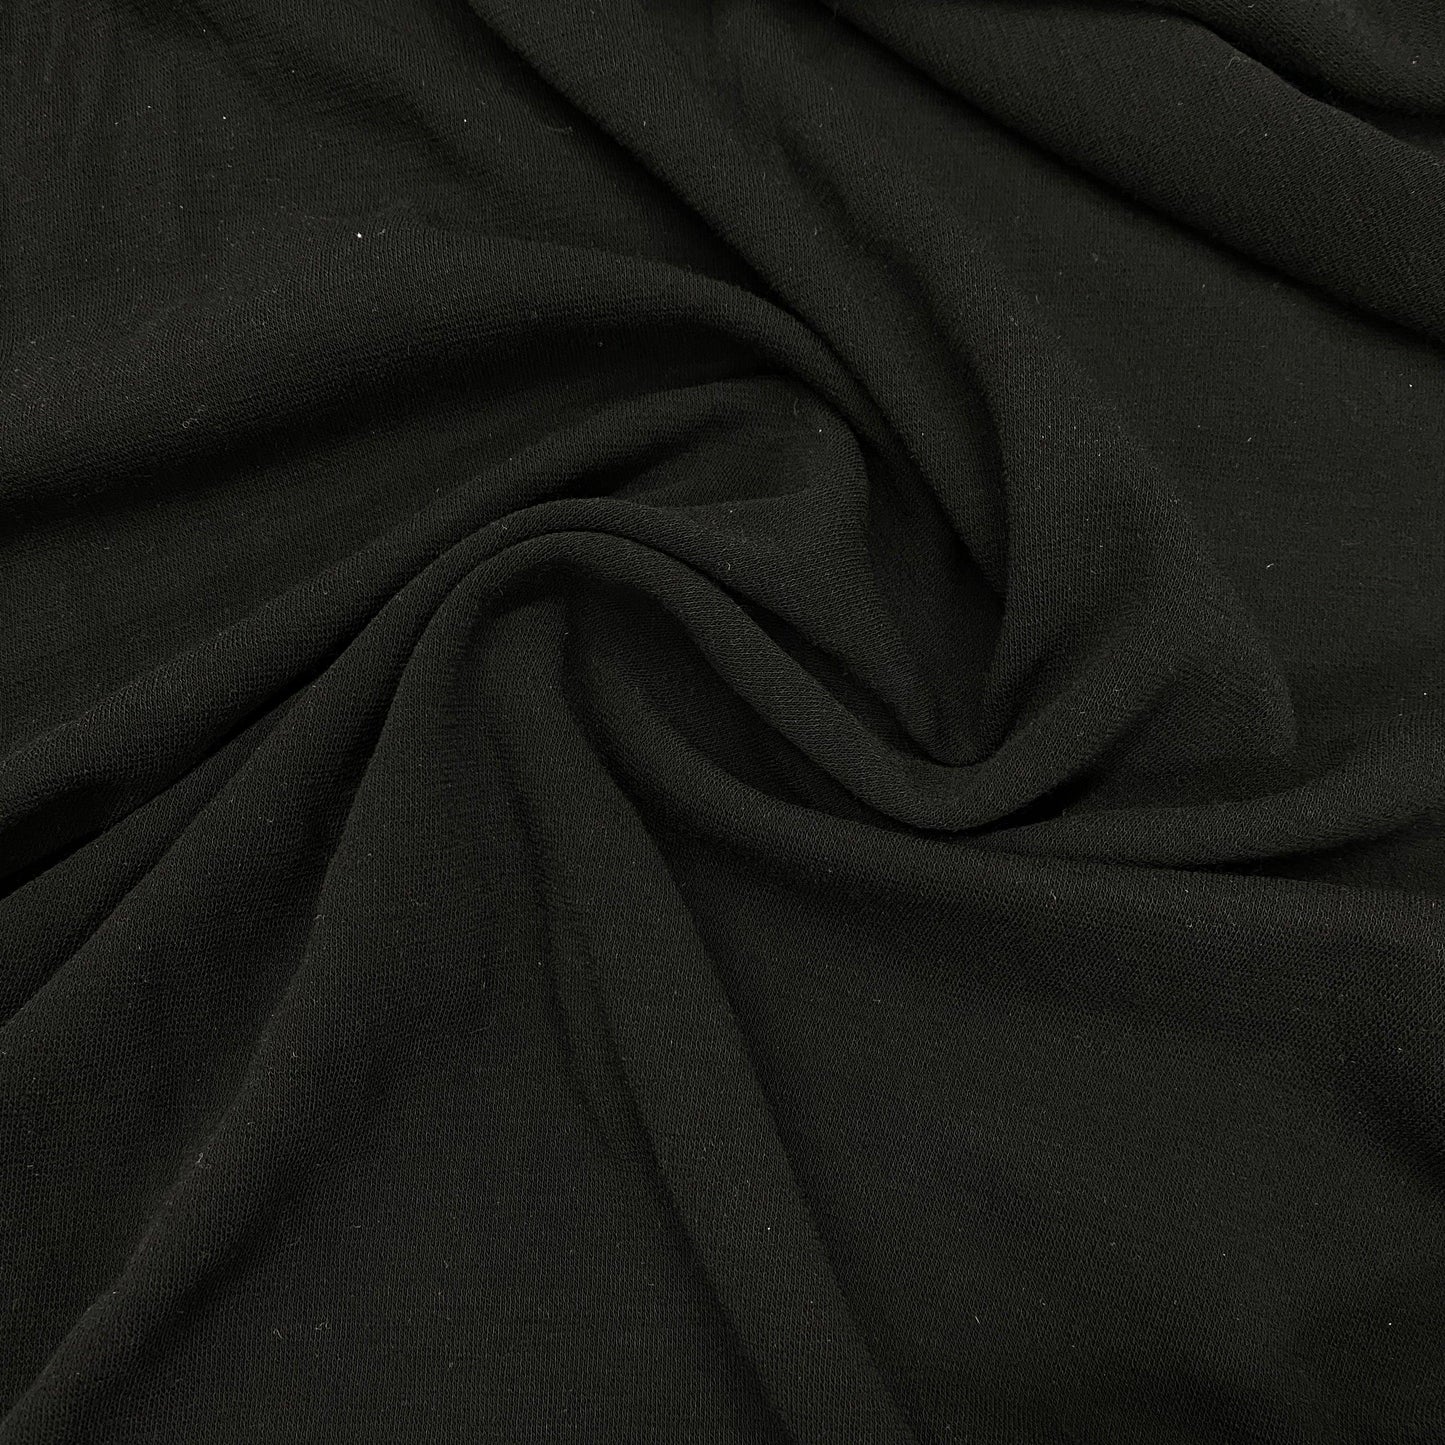 Black 100% Merino Wool Interlock Fabric - 235 GSM - Washable - Nature's Fabrics